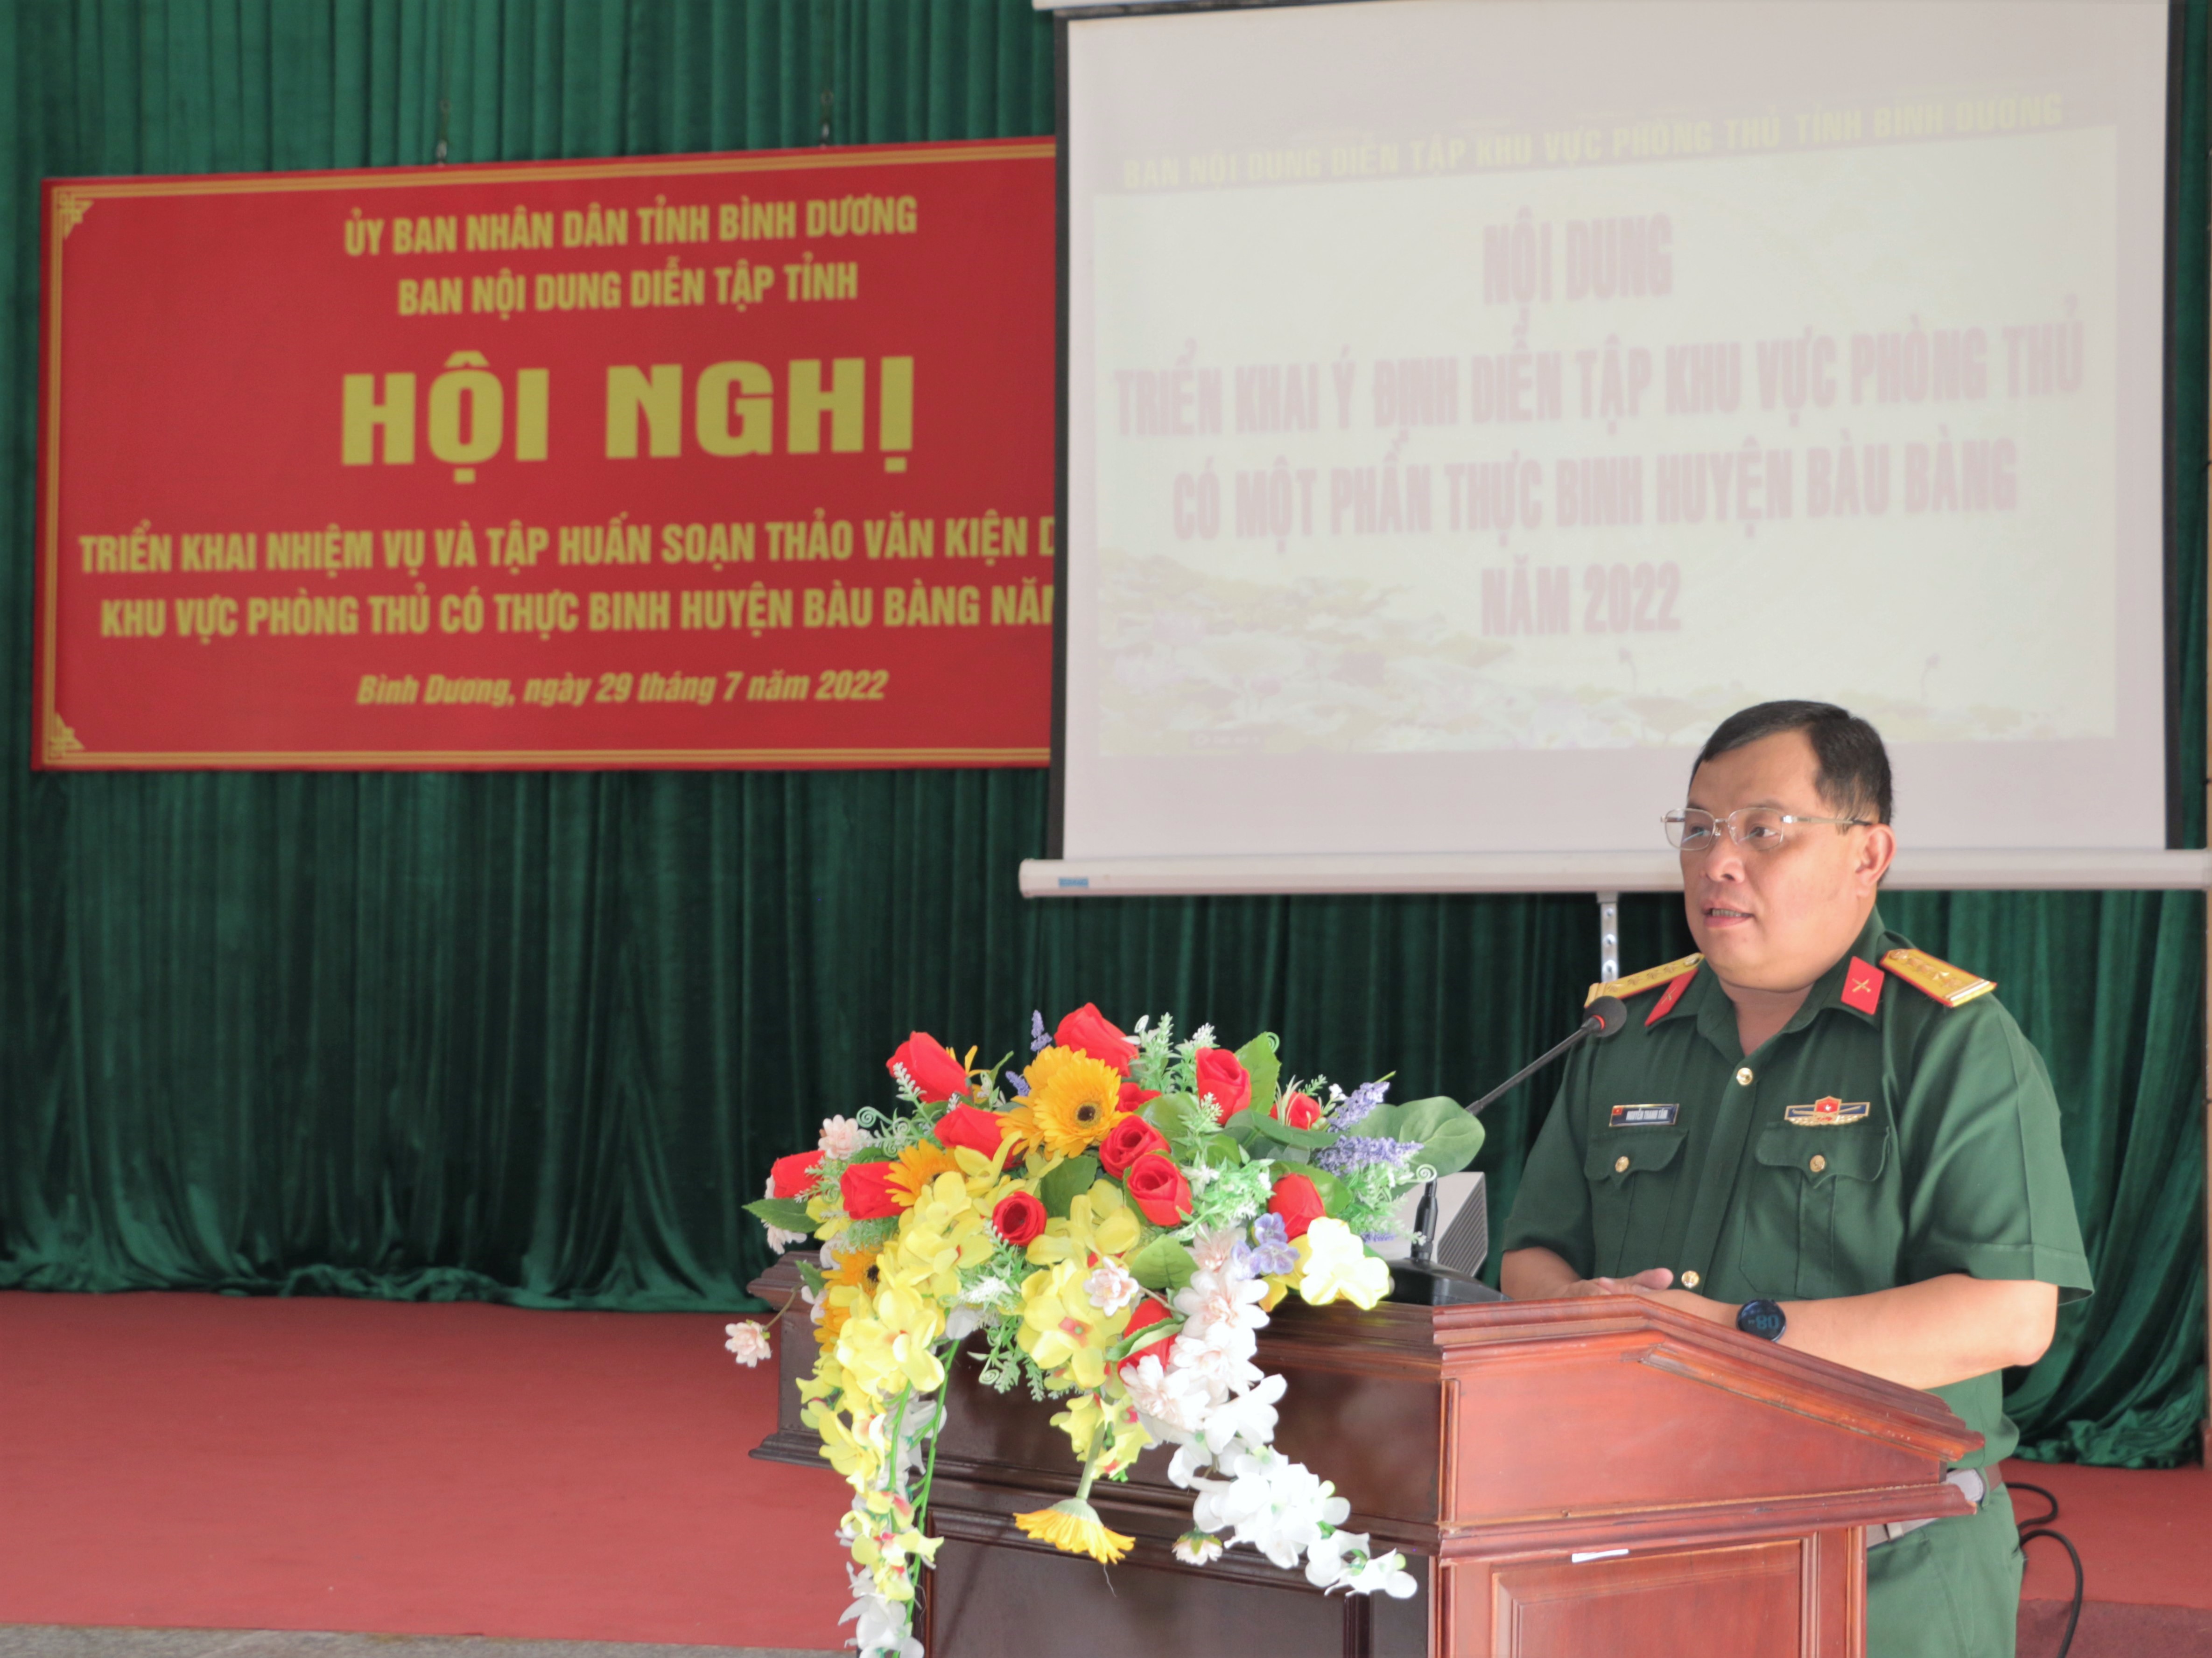 Hội nghị triển khai nhiệm vụ và tập huấn soạn thảo văn kiện diễn tập khu vực phòng thủ có thực binh huyện Bàu Bàng năm 2022